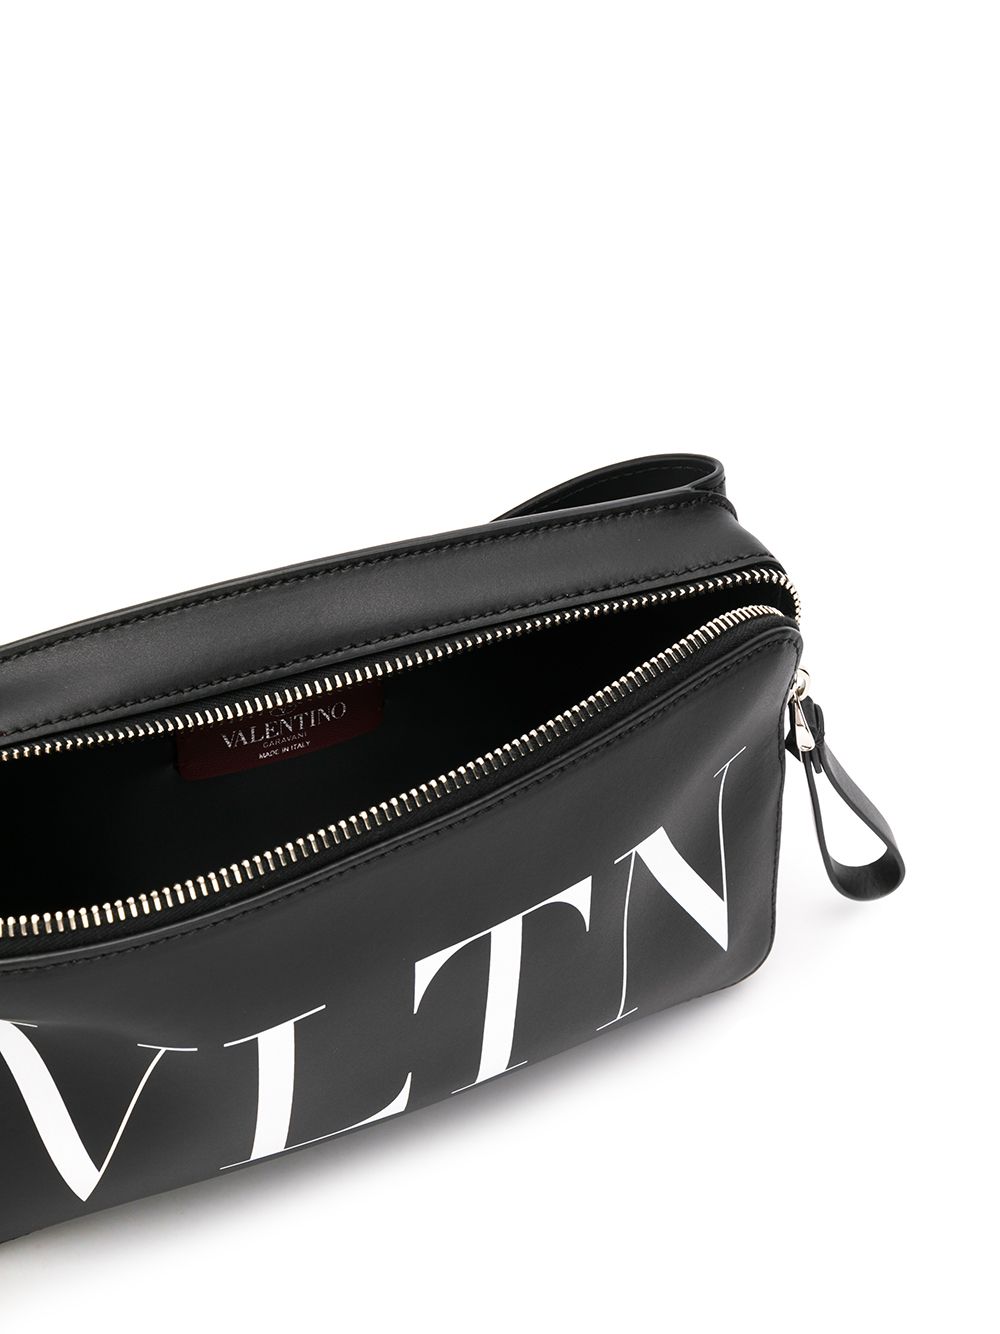 фото Valentino поясная сумка valentino garavani с принтом vltn